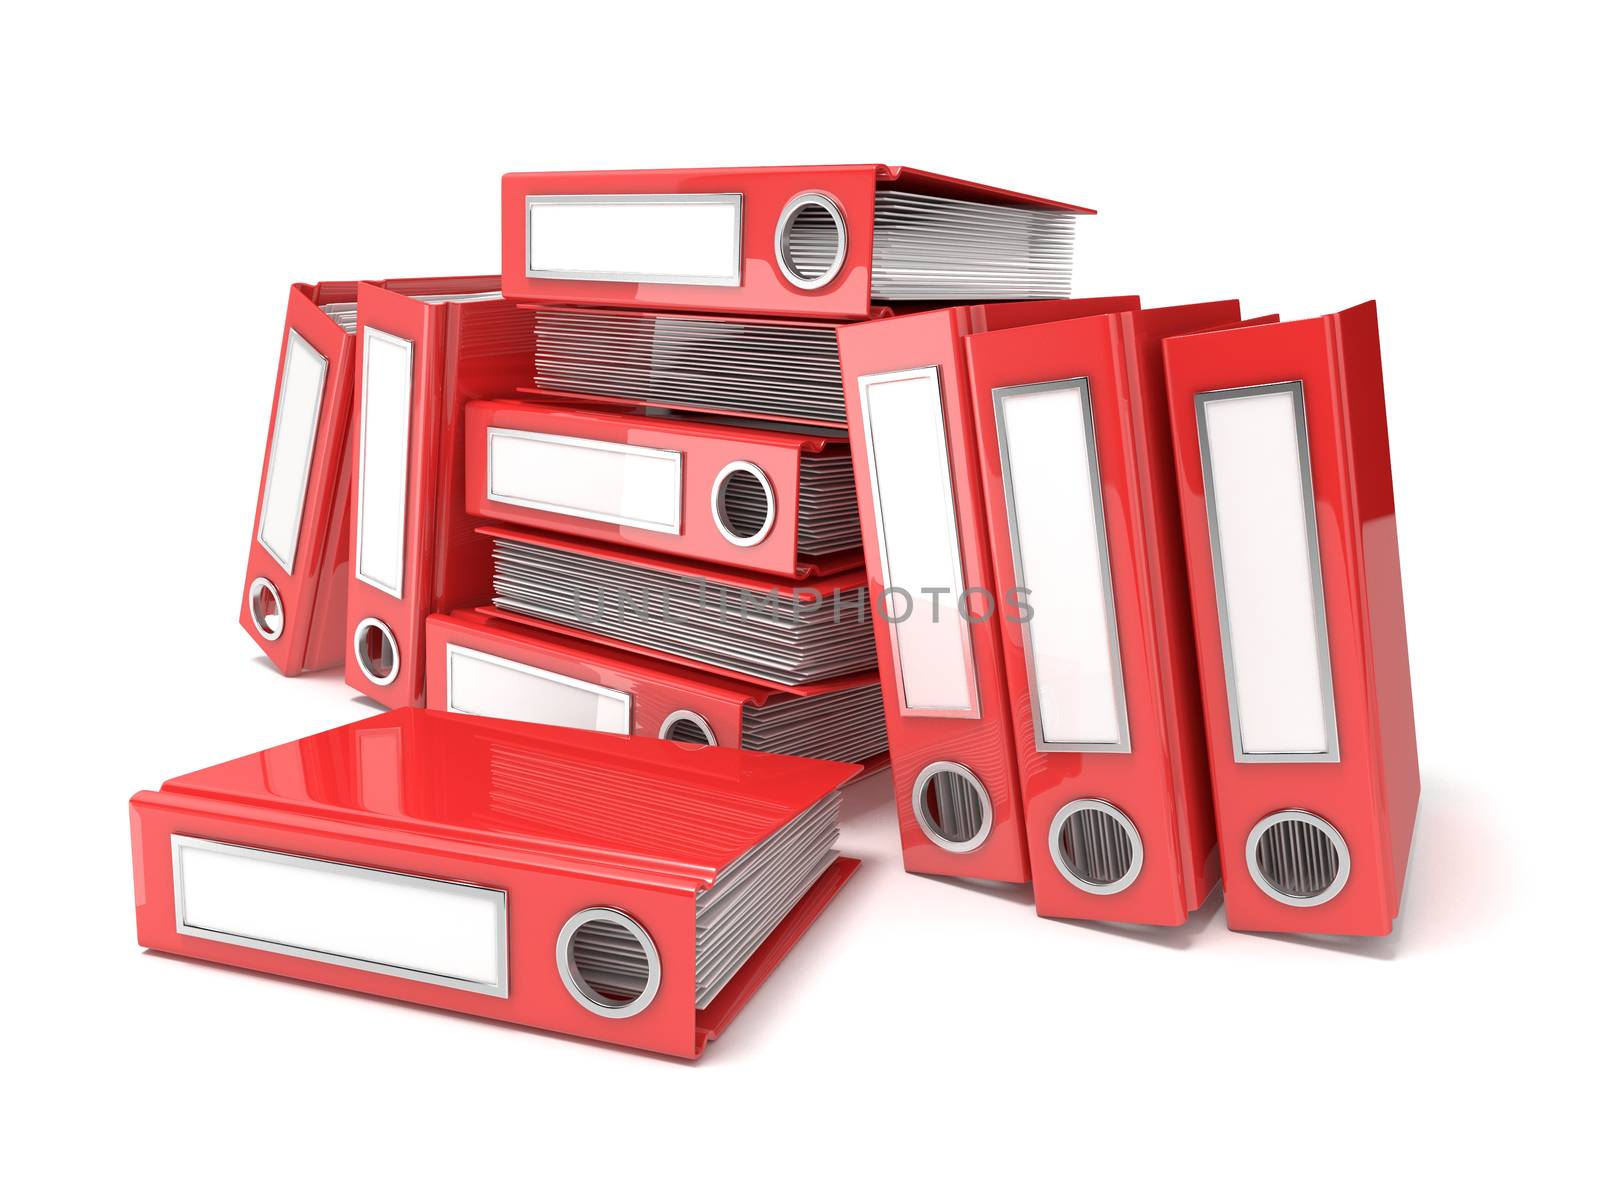 Batch of binders, red office folders. 3D by djmilic